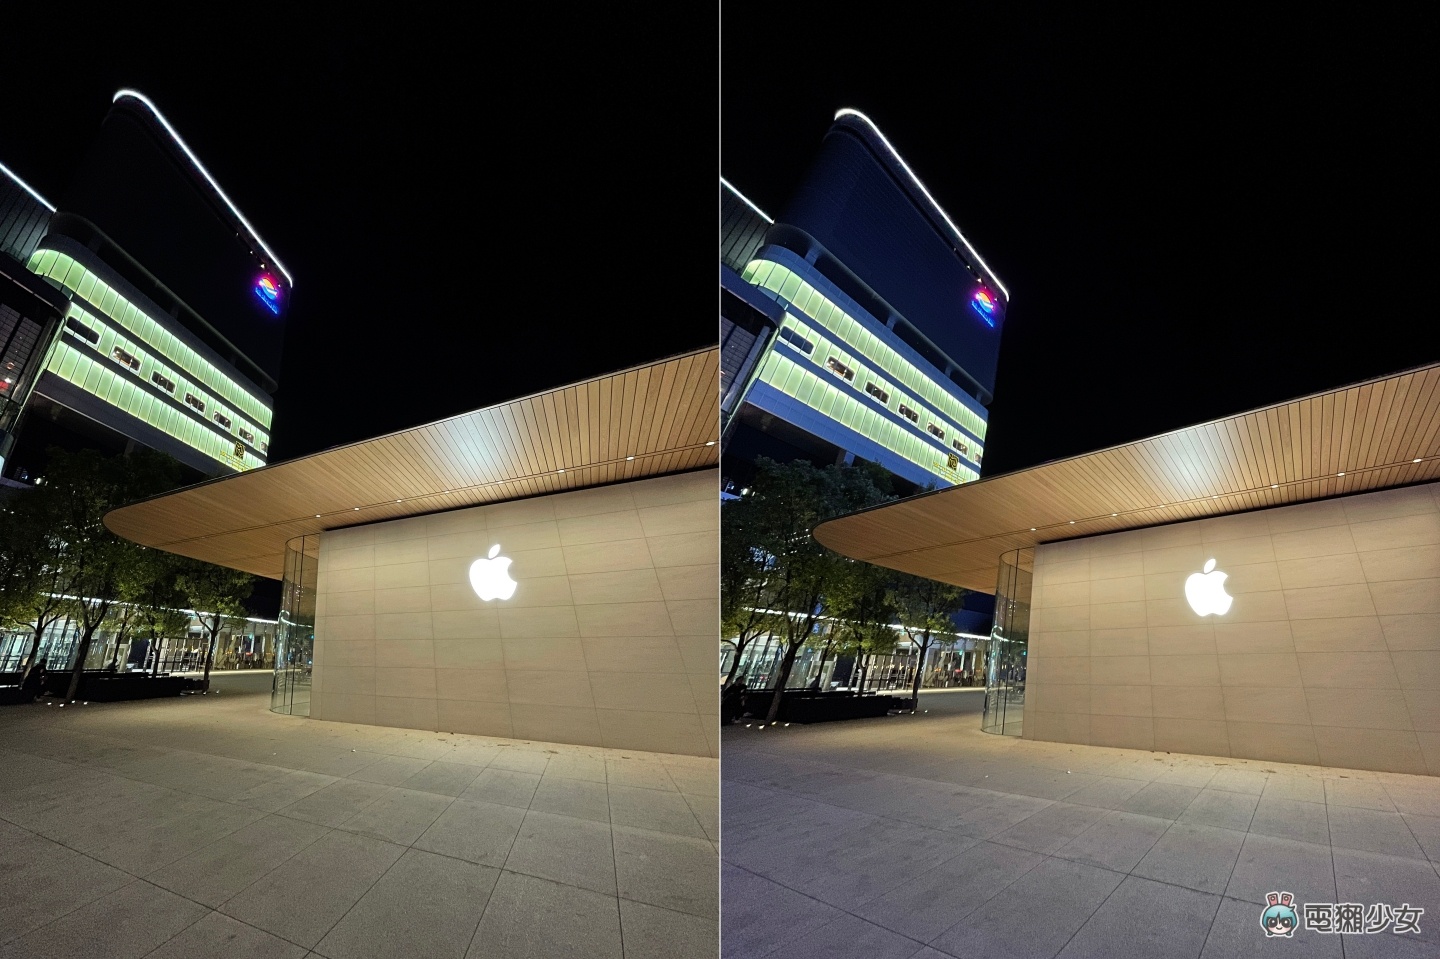 比較｜iPhone 12 與 iPhone 12 Pro 拍照有差很多嗎？夜拍、景深、超廣角等情境實拍給你看